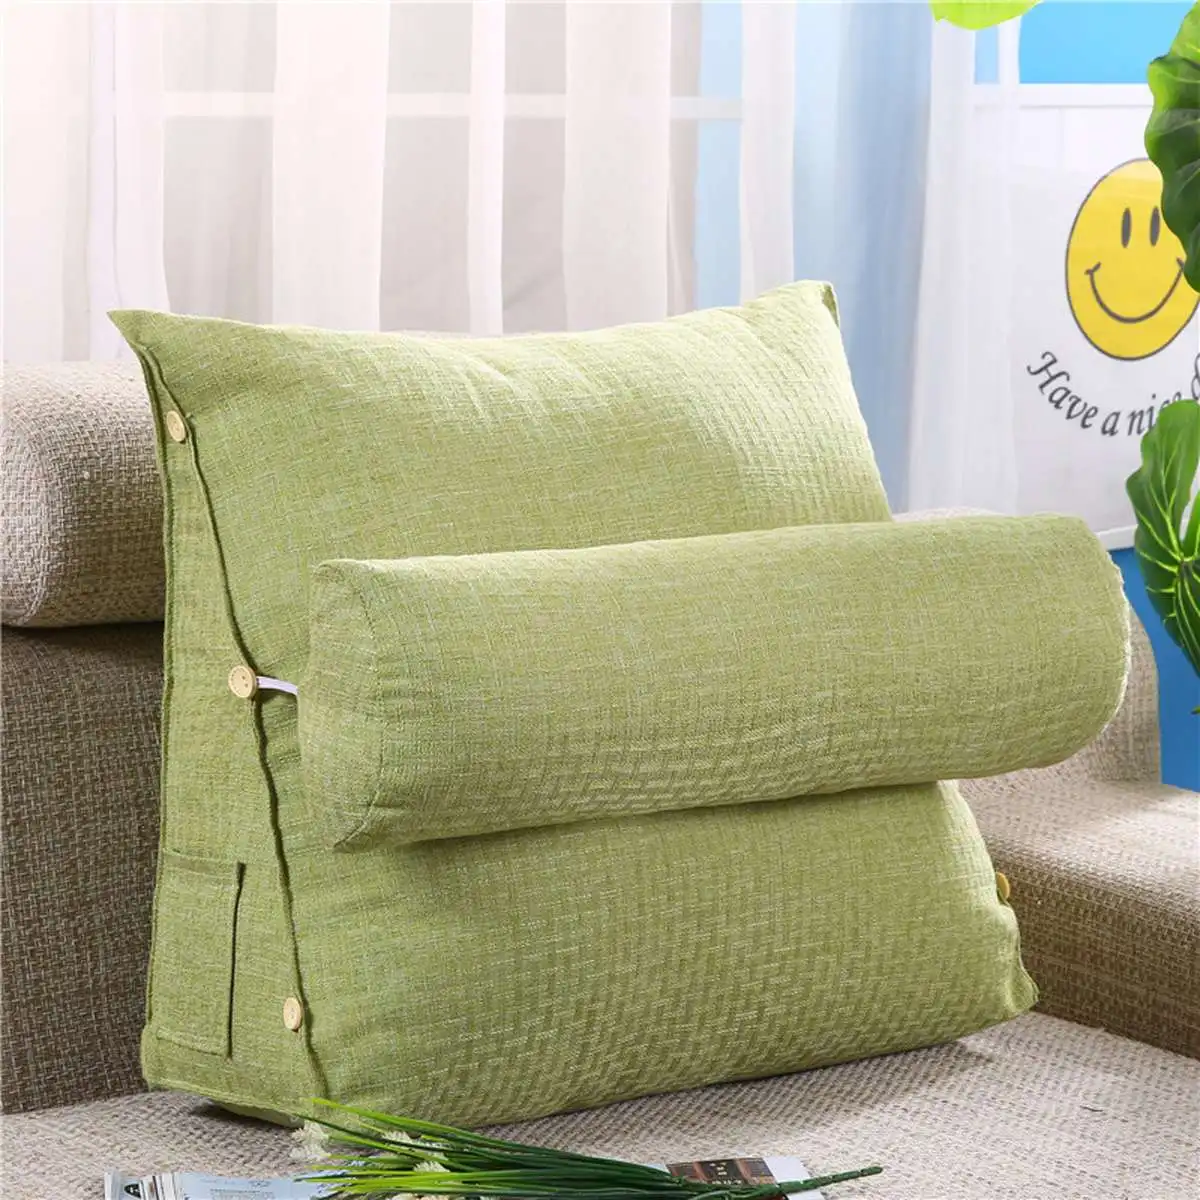 Кровать треугольная диванная Подушка под спину спинка подушка для офисного стула поддержка талии подушка шезлонг ТВ чтение Поясничный домашний декор - Цвет: Светло-зеленый